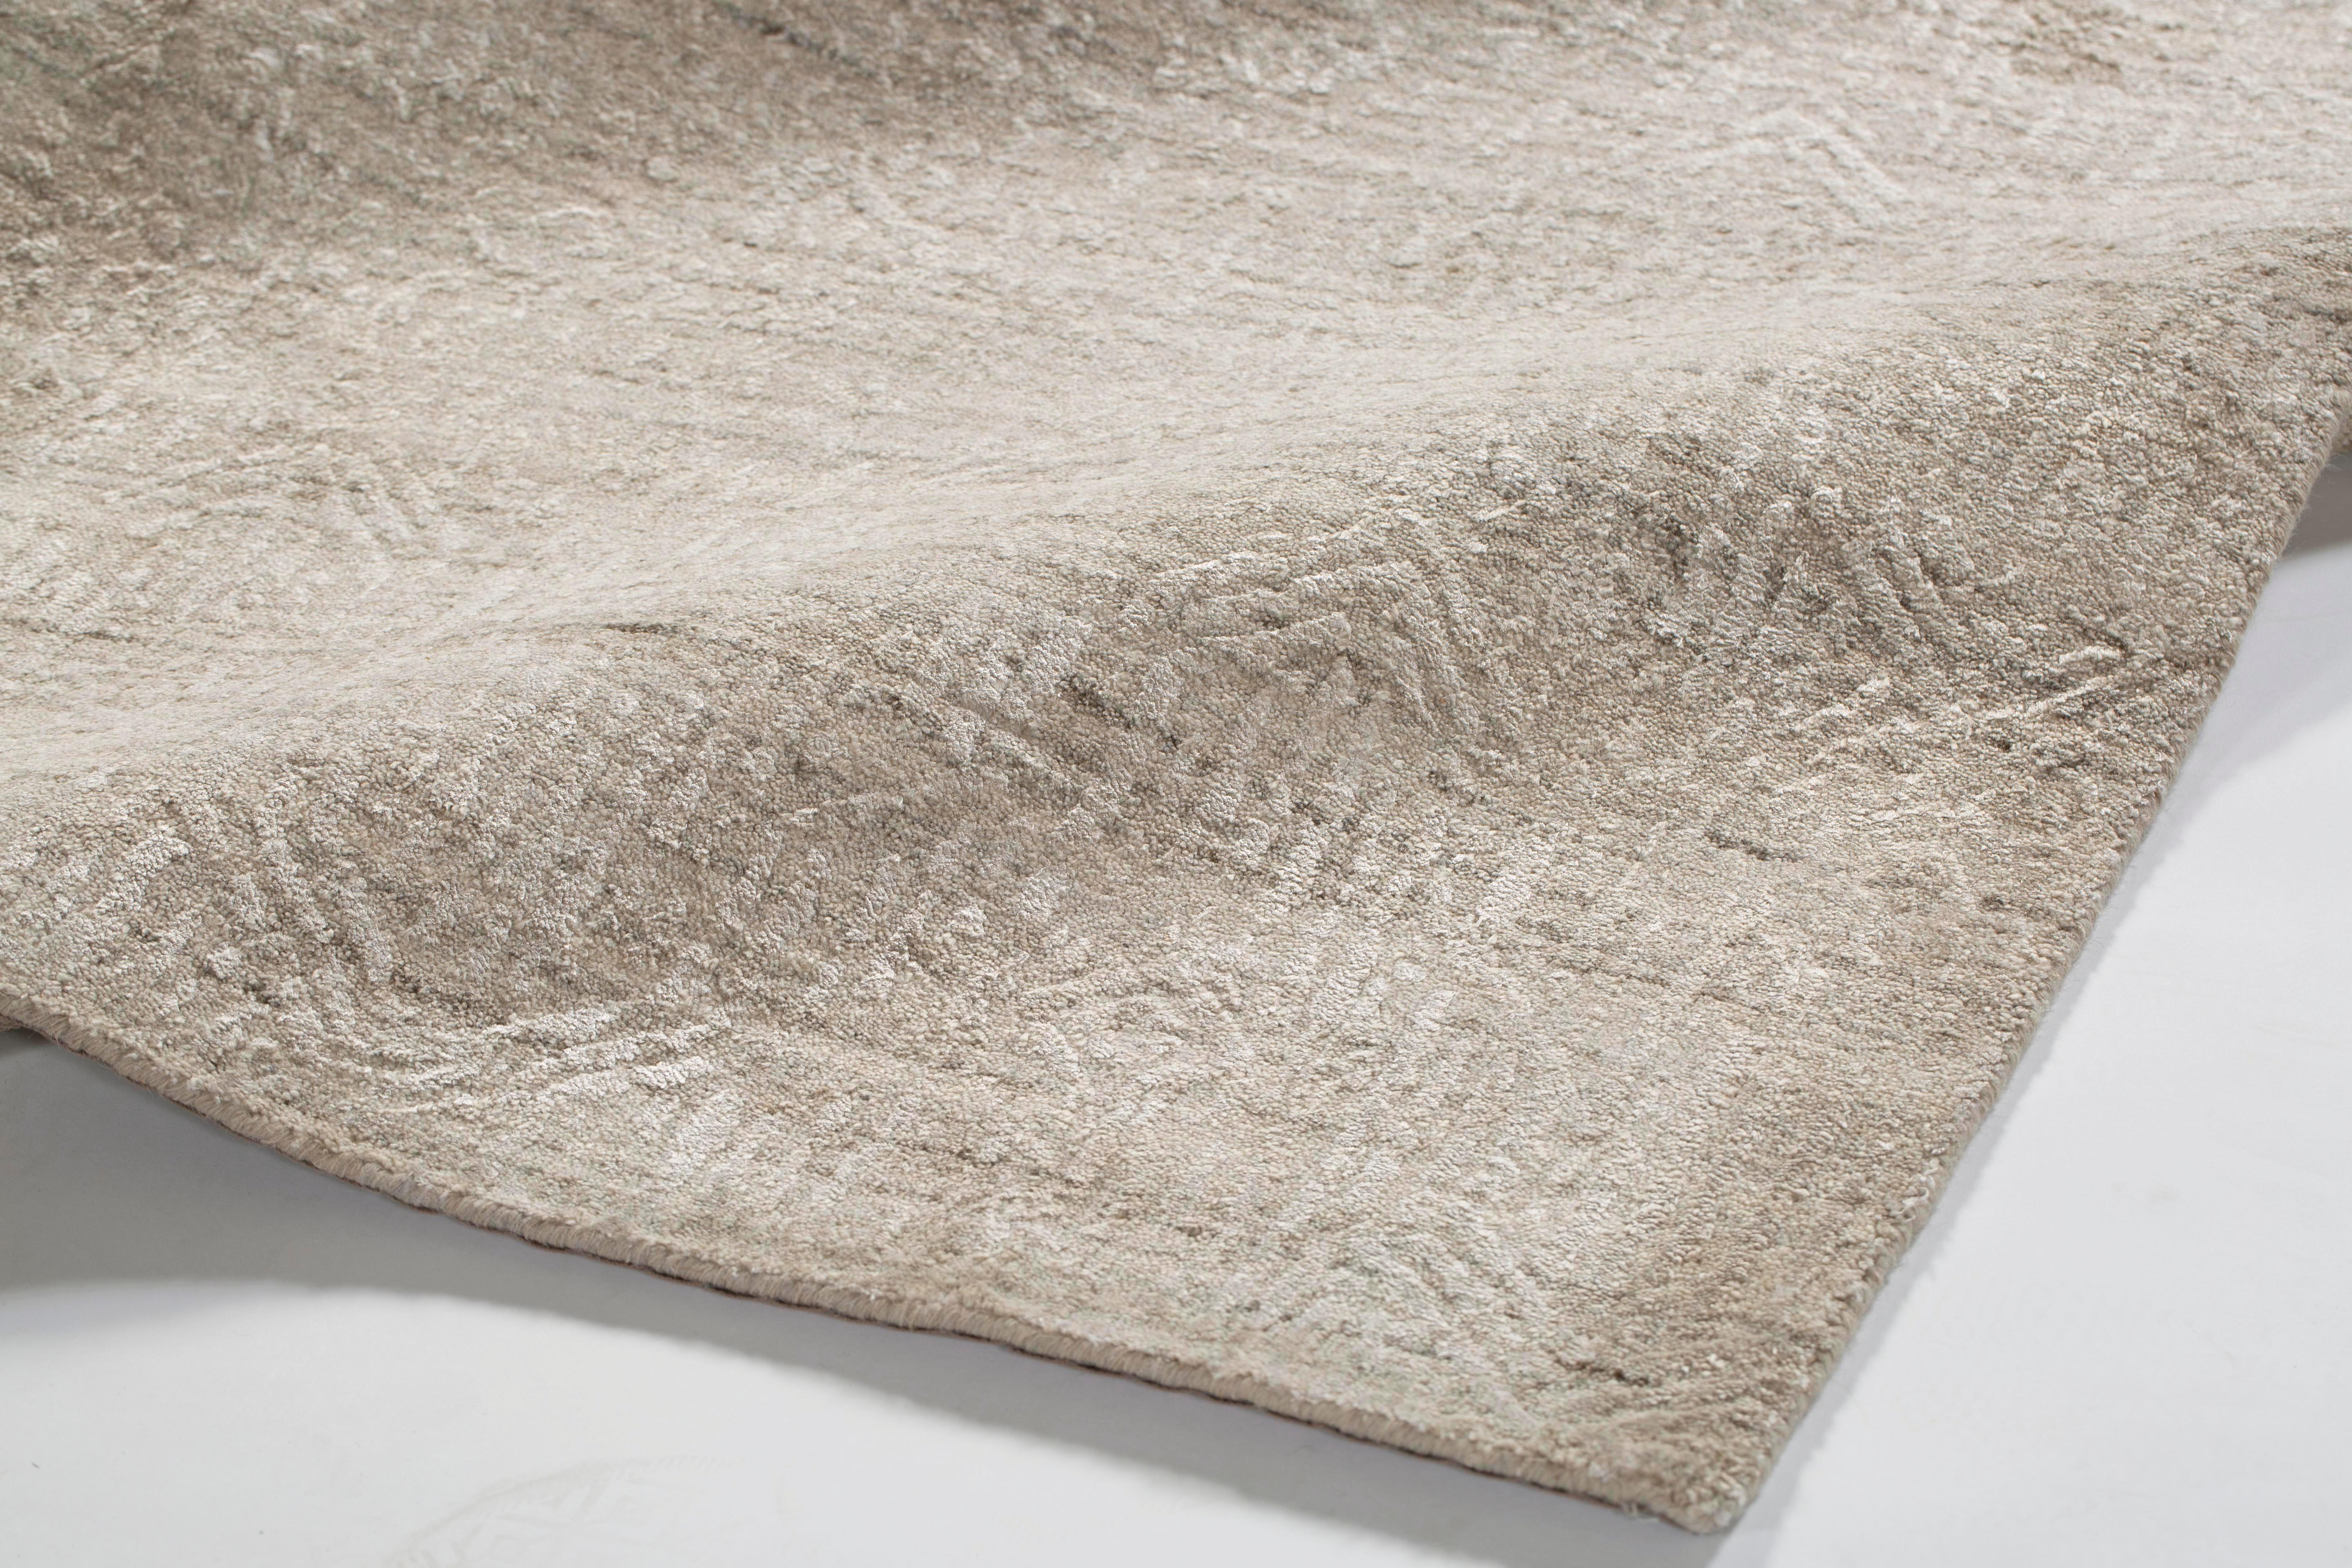 Metropolis Wheat ist ein einzigartiges Farbmuster für unsere New Textures Collection'S. Dieser Niederflorteppich mildert die scharfen Kanten eines jeden Raumes und bietet einen herrlich luxuriösen Platz für Ihre Füße.